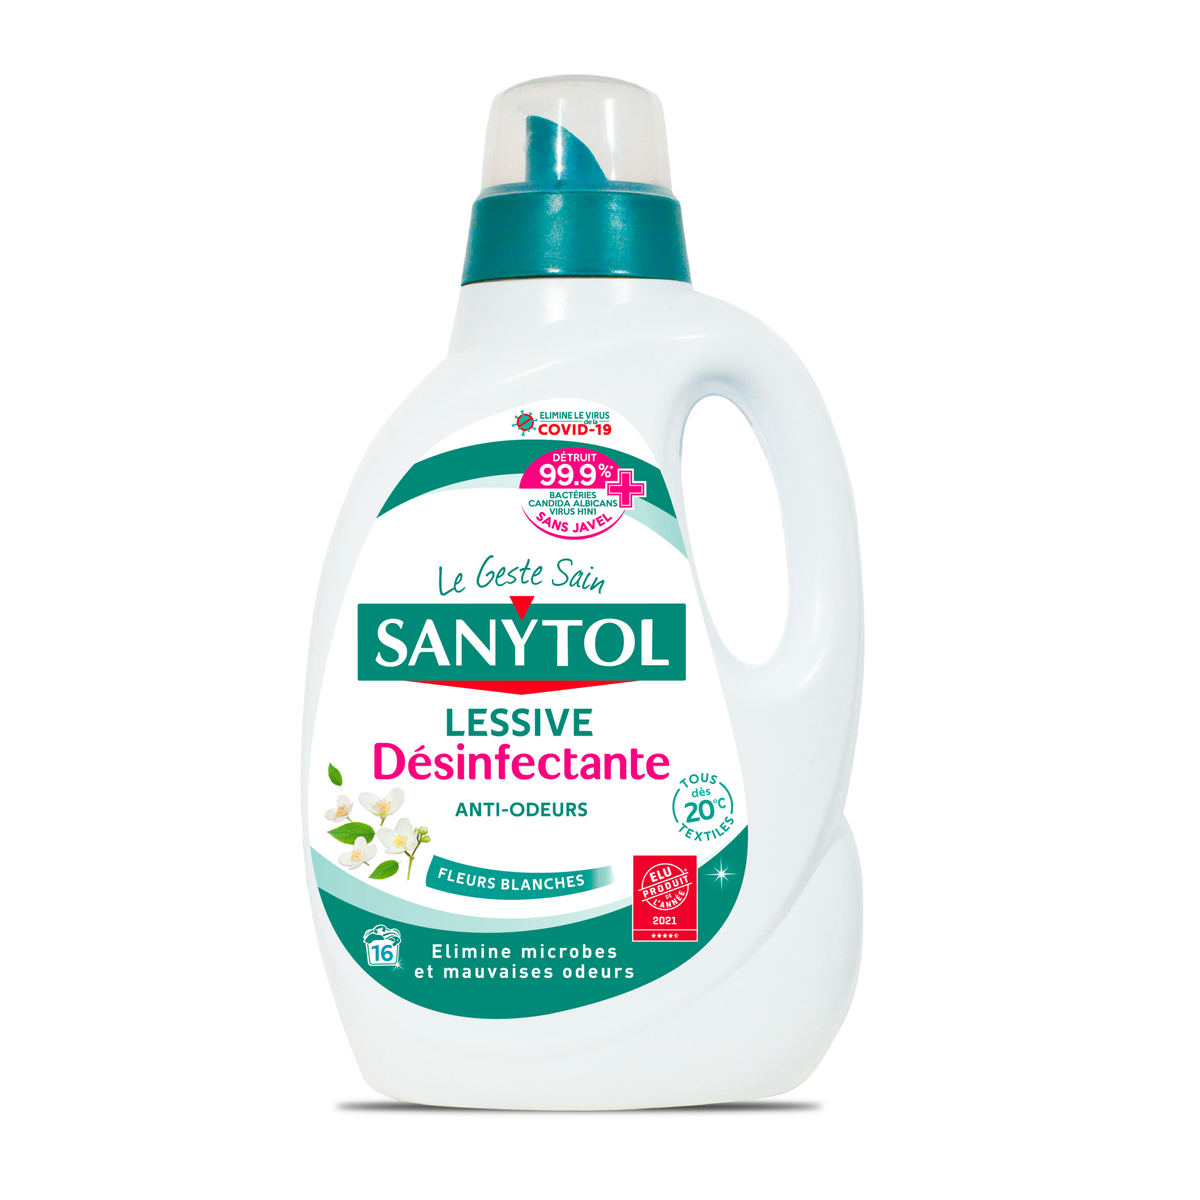 SANYTOL Lessive désinfectante anti-odeurs fleurs blanches 17 lavages 1,65l